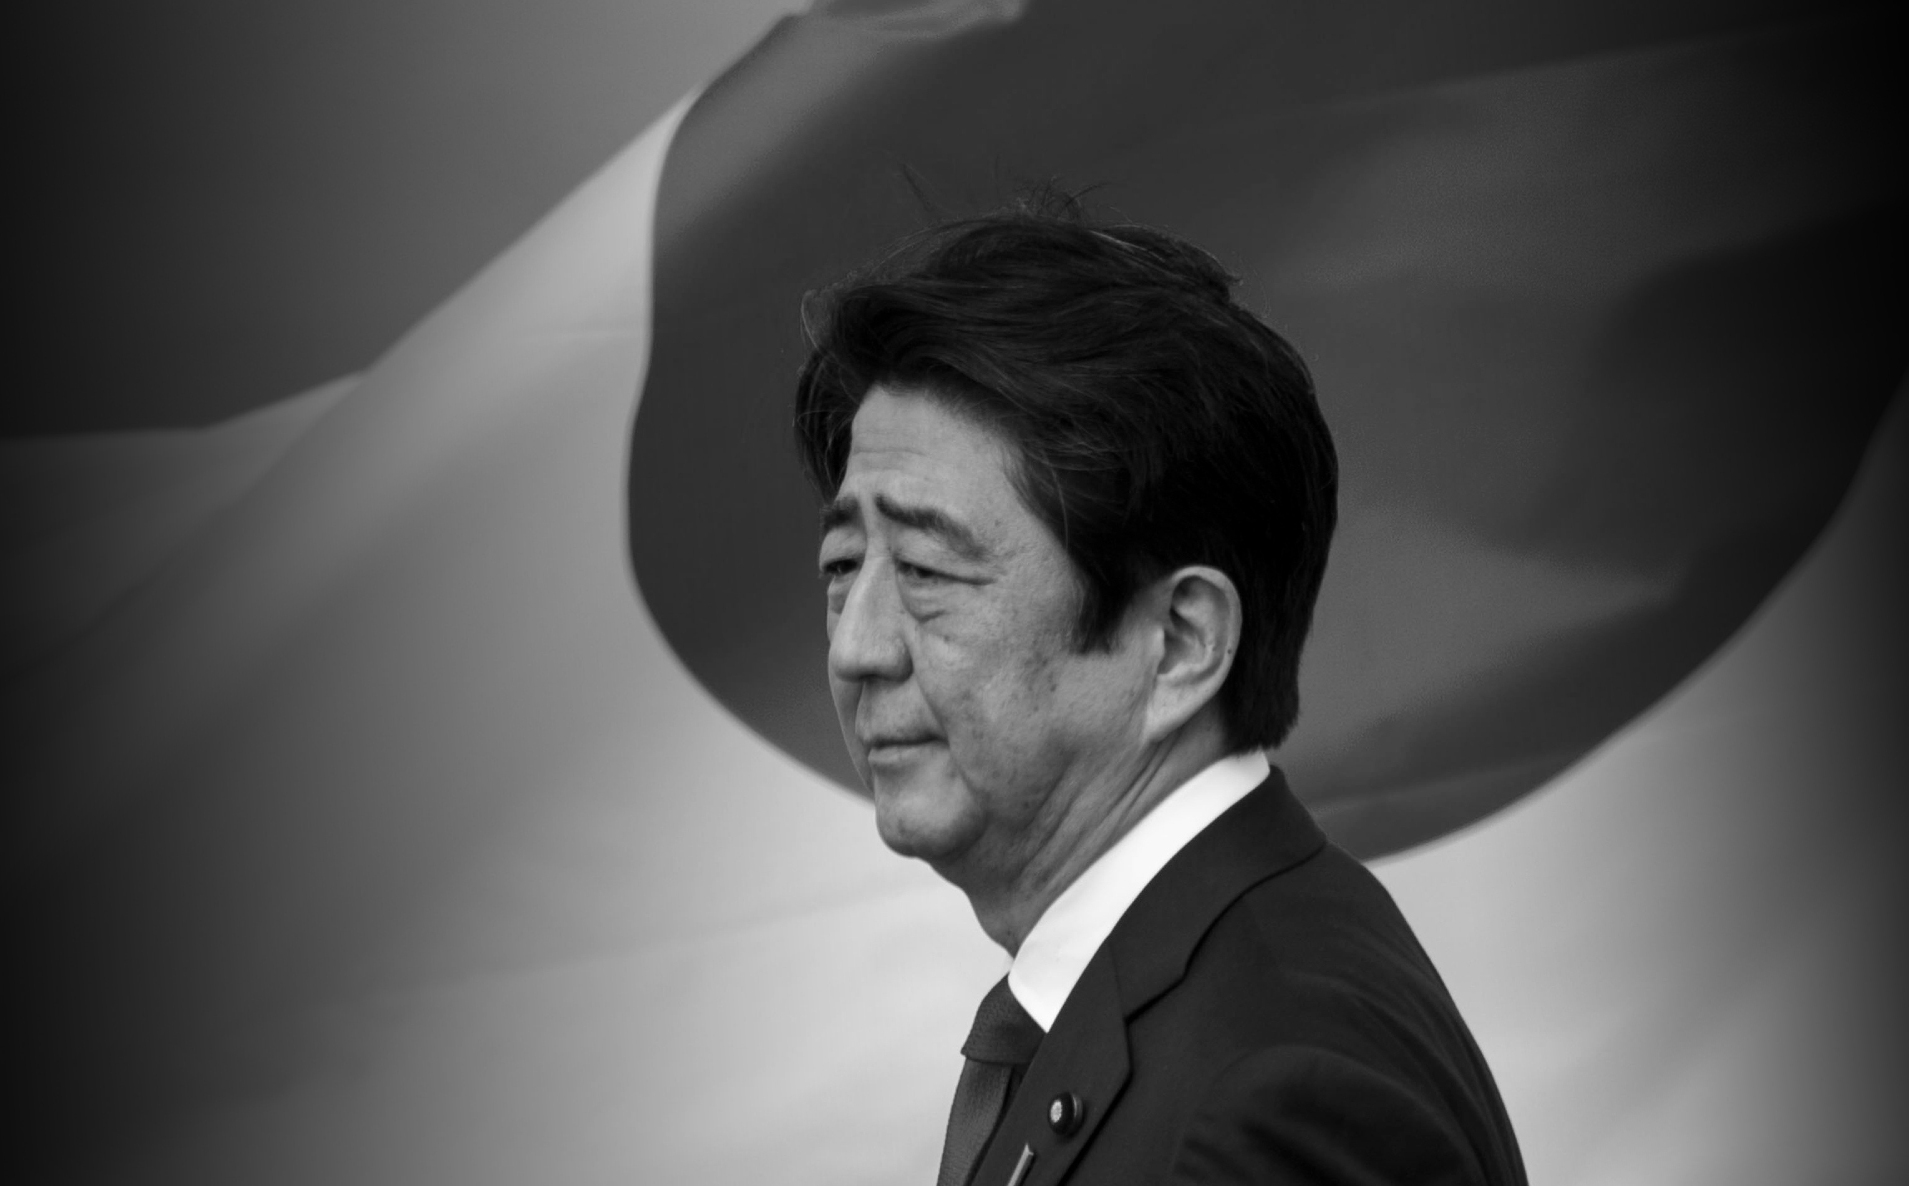 Đài NHK: Cựu Thủ tướng Nhật Shinzo Abe đã qua đời sau khi bị ám sát ở Nara